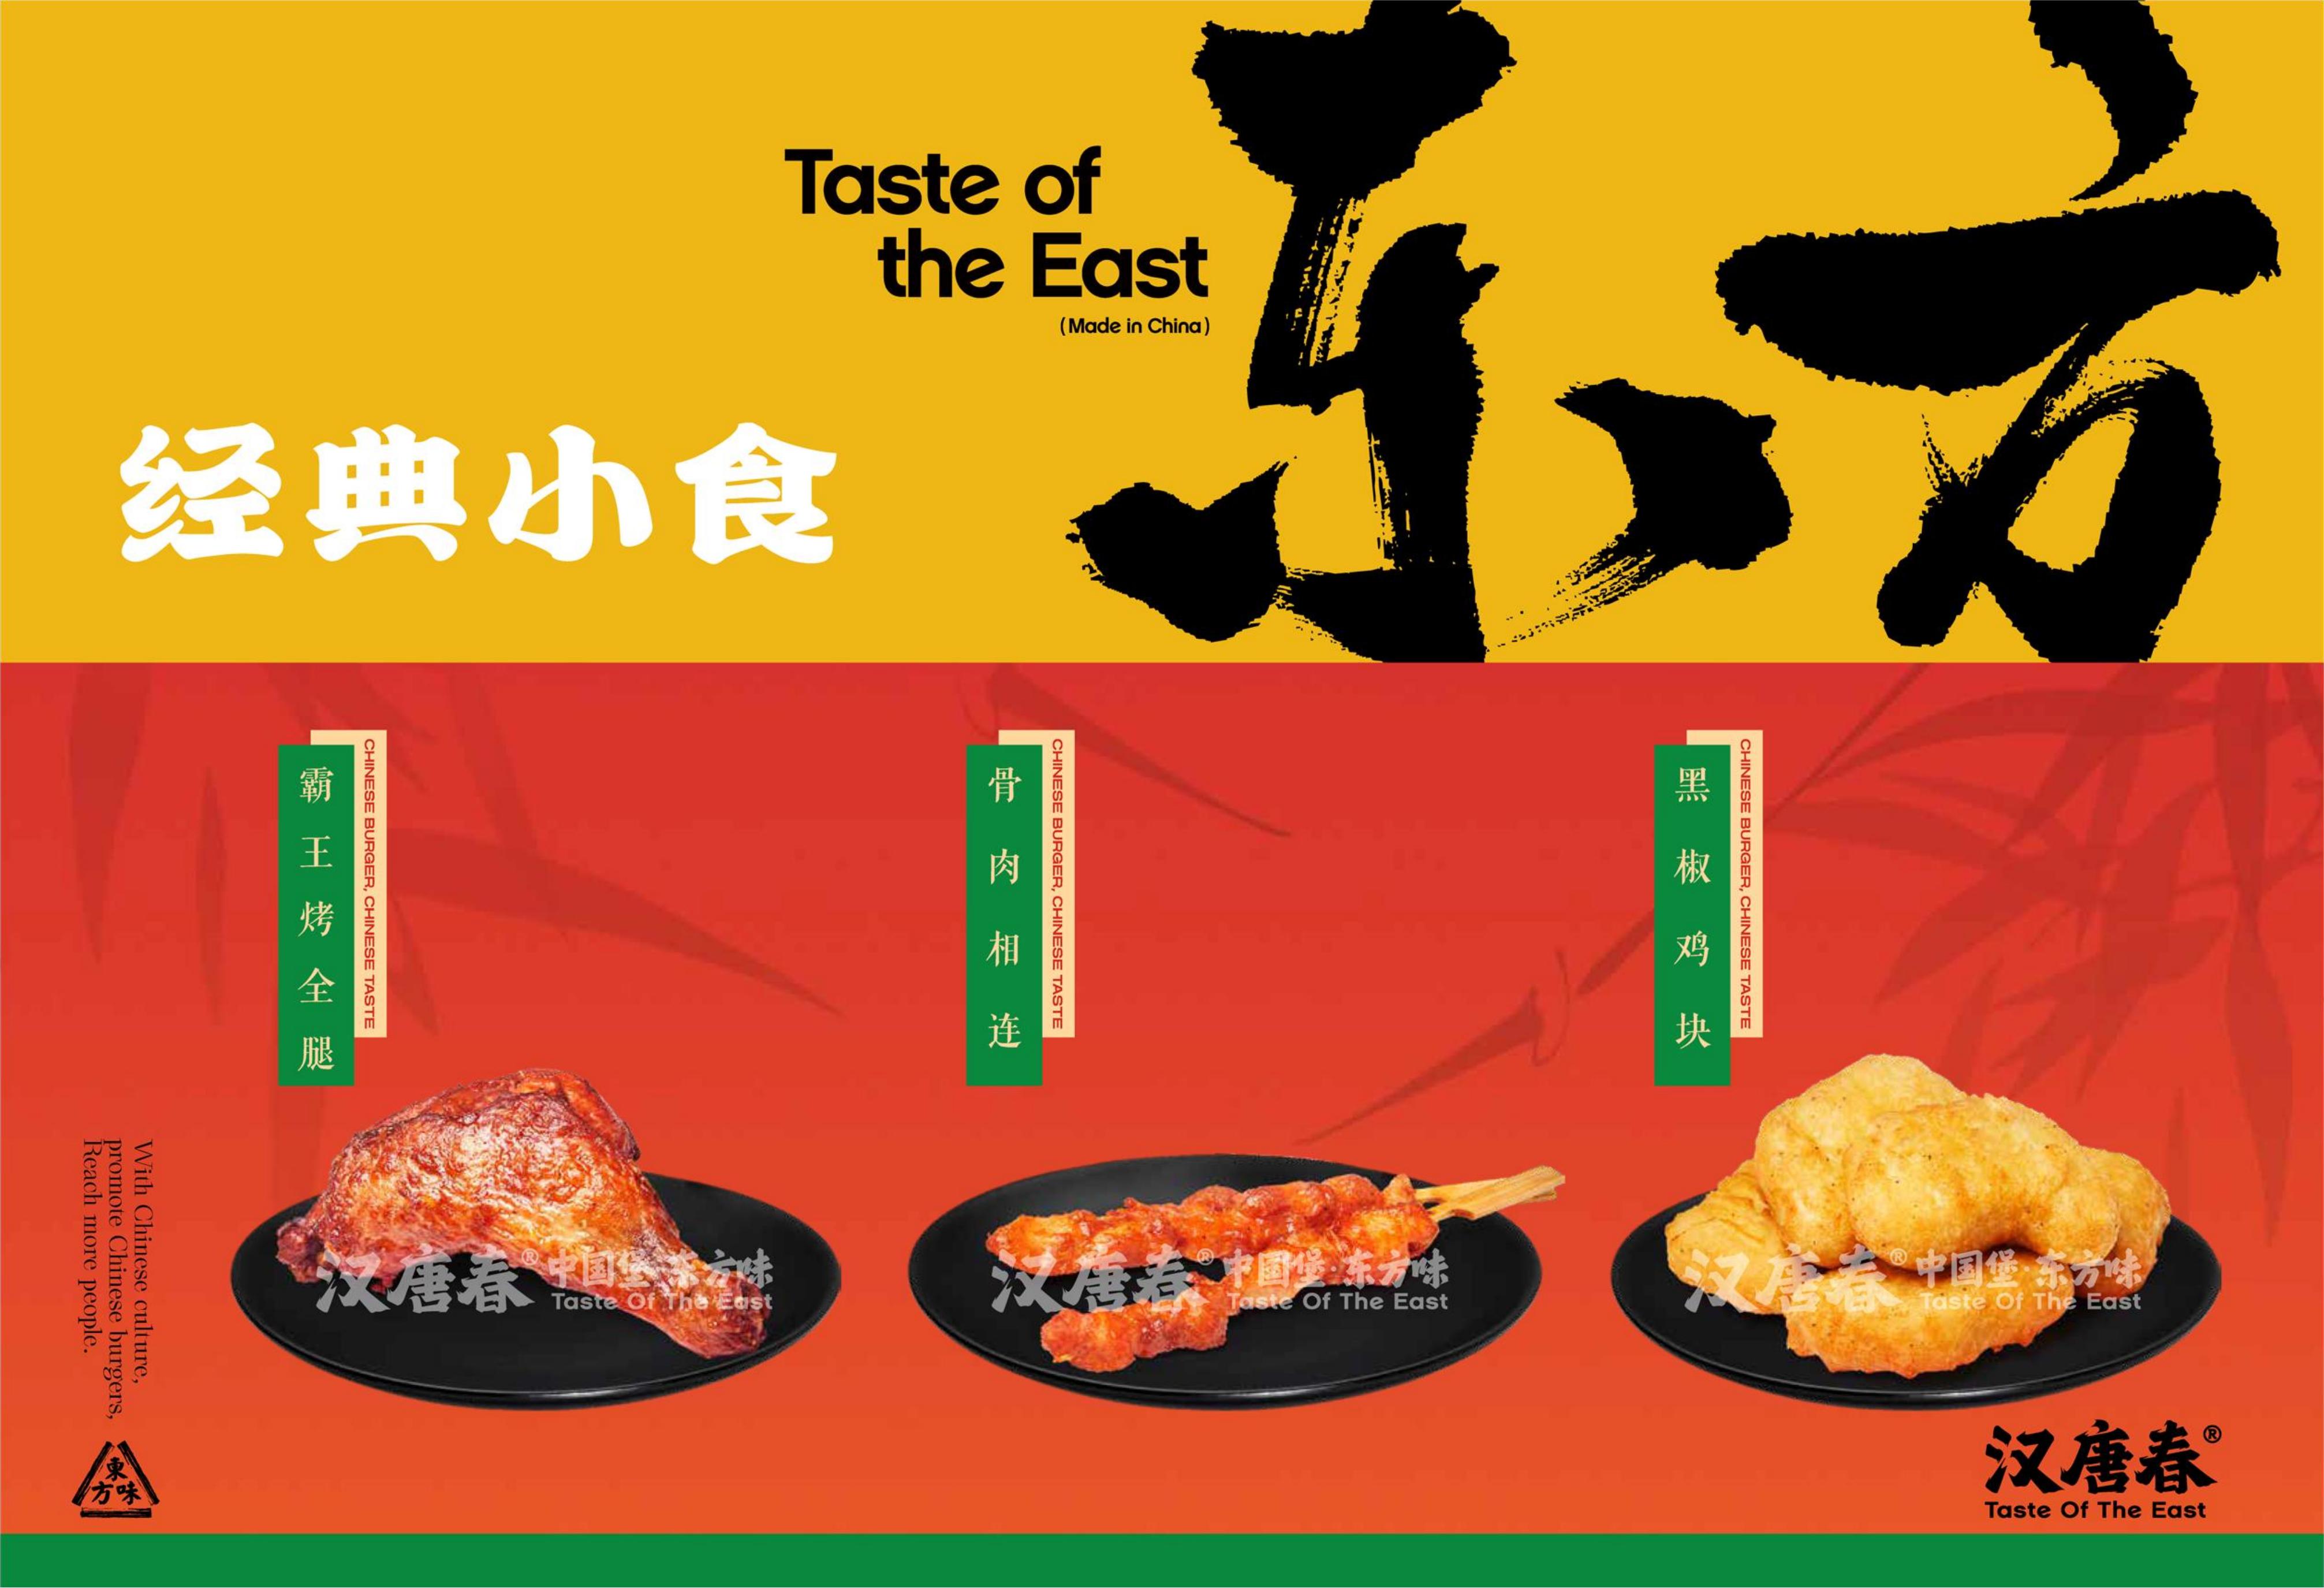 中国汉堡经典小食黑椒鸡块(图1)